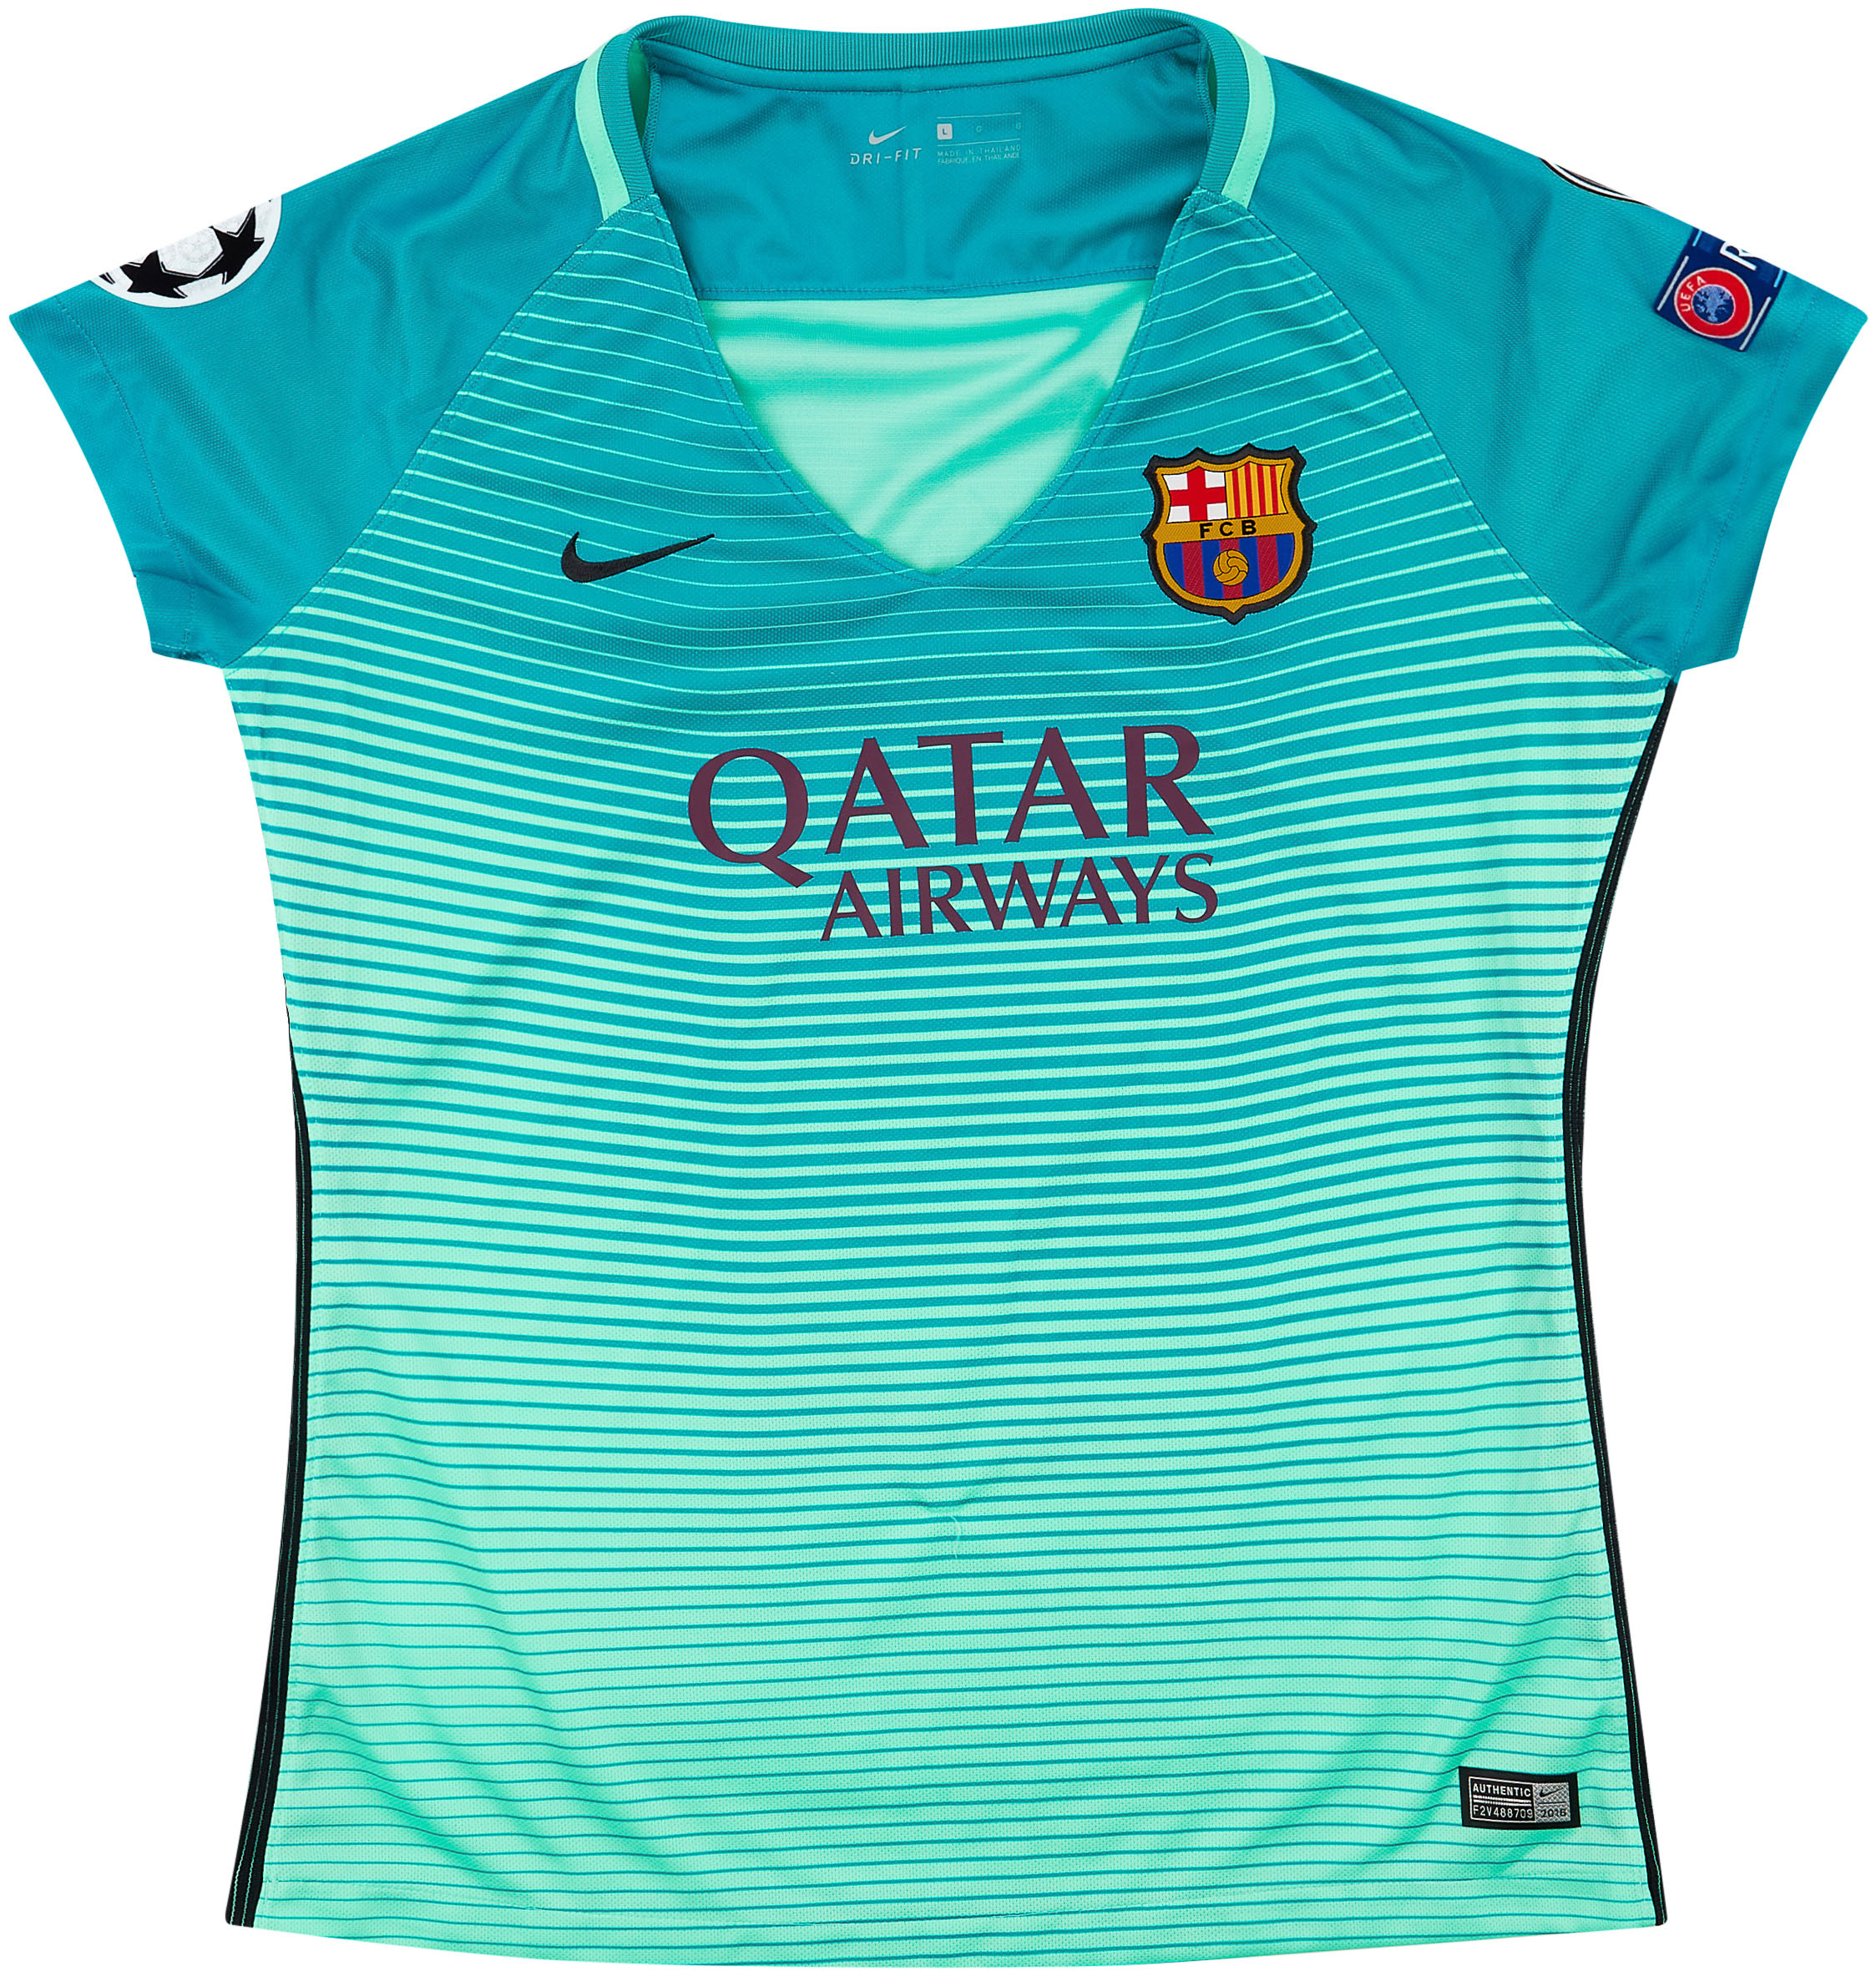 2016-17 Barcelona Third Shirt - 9/10 - (Women's )